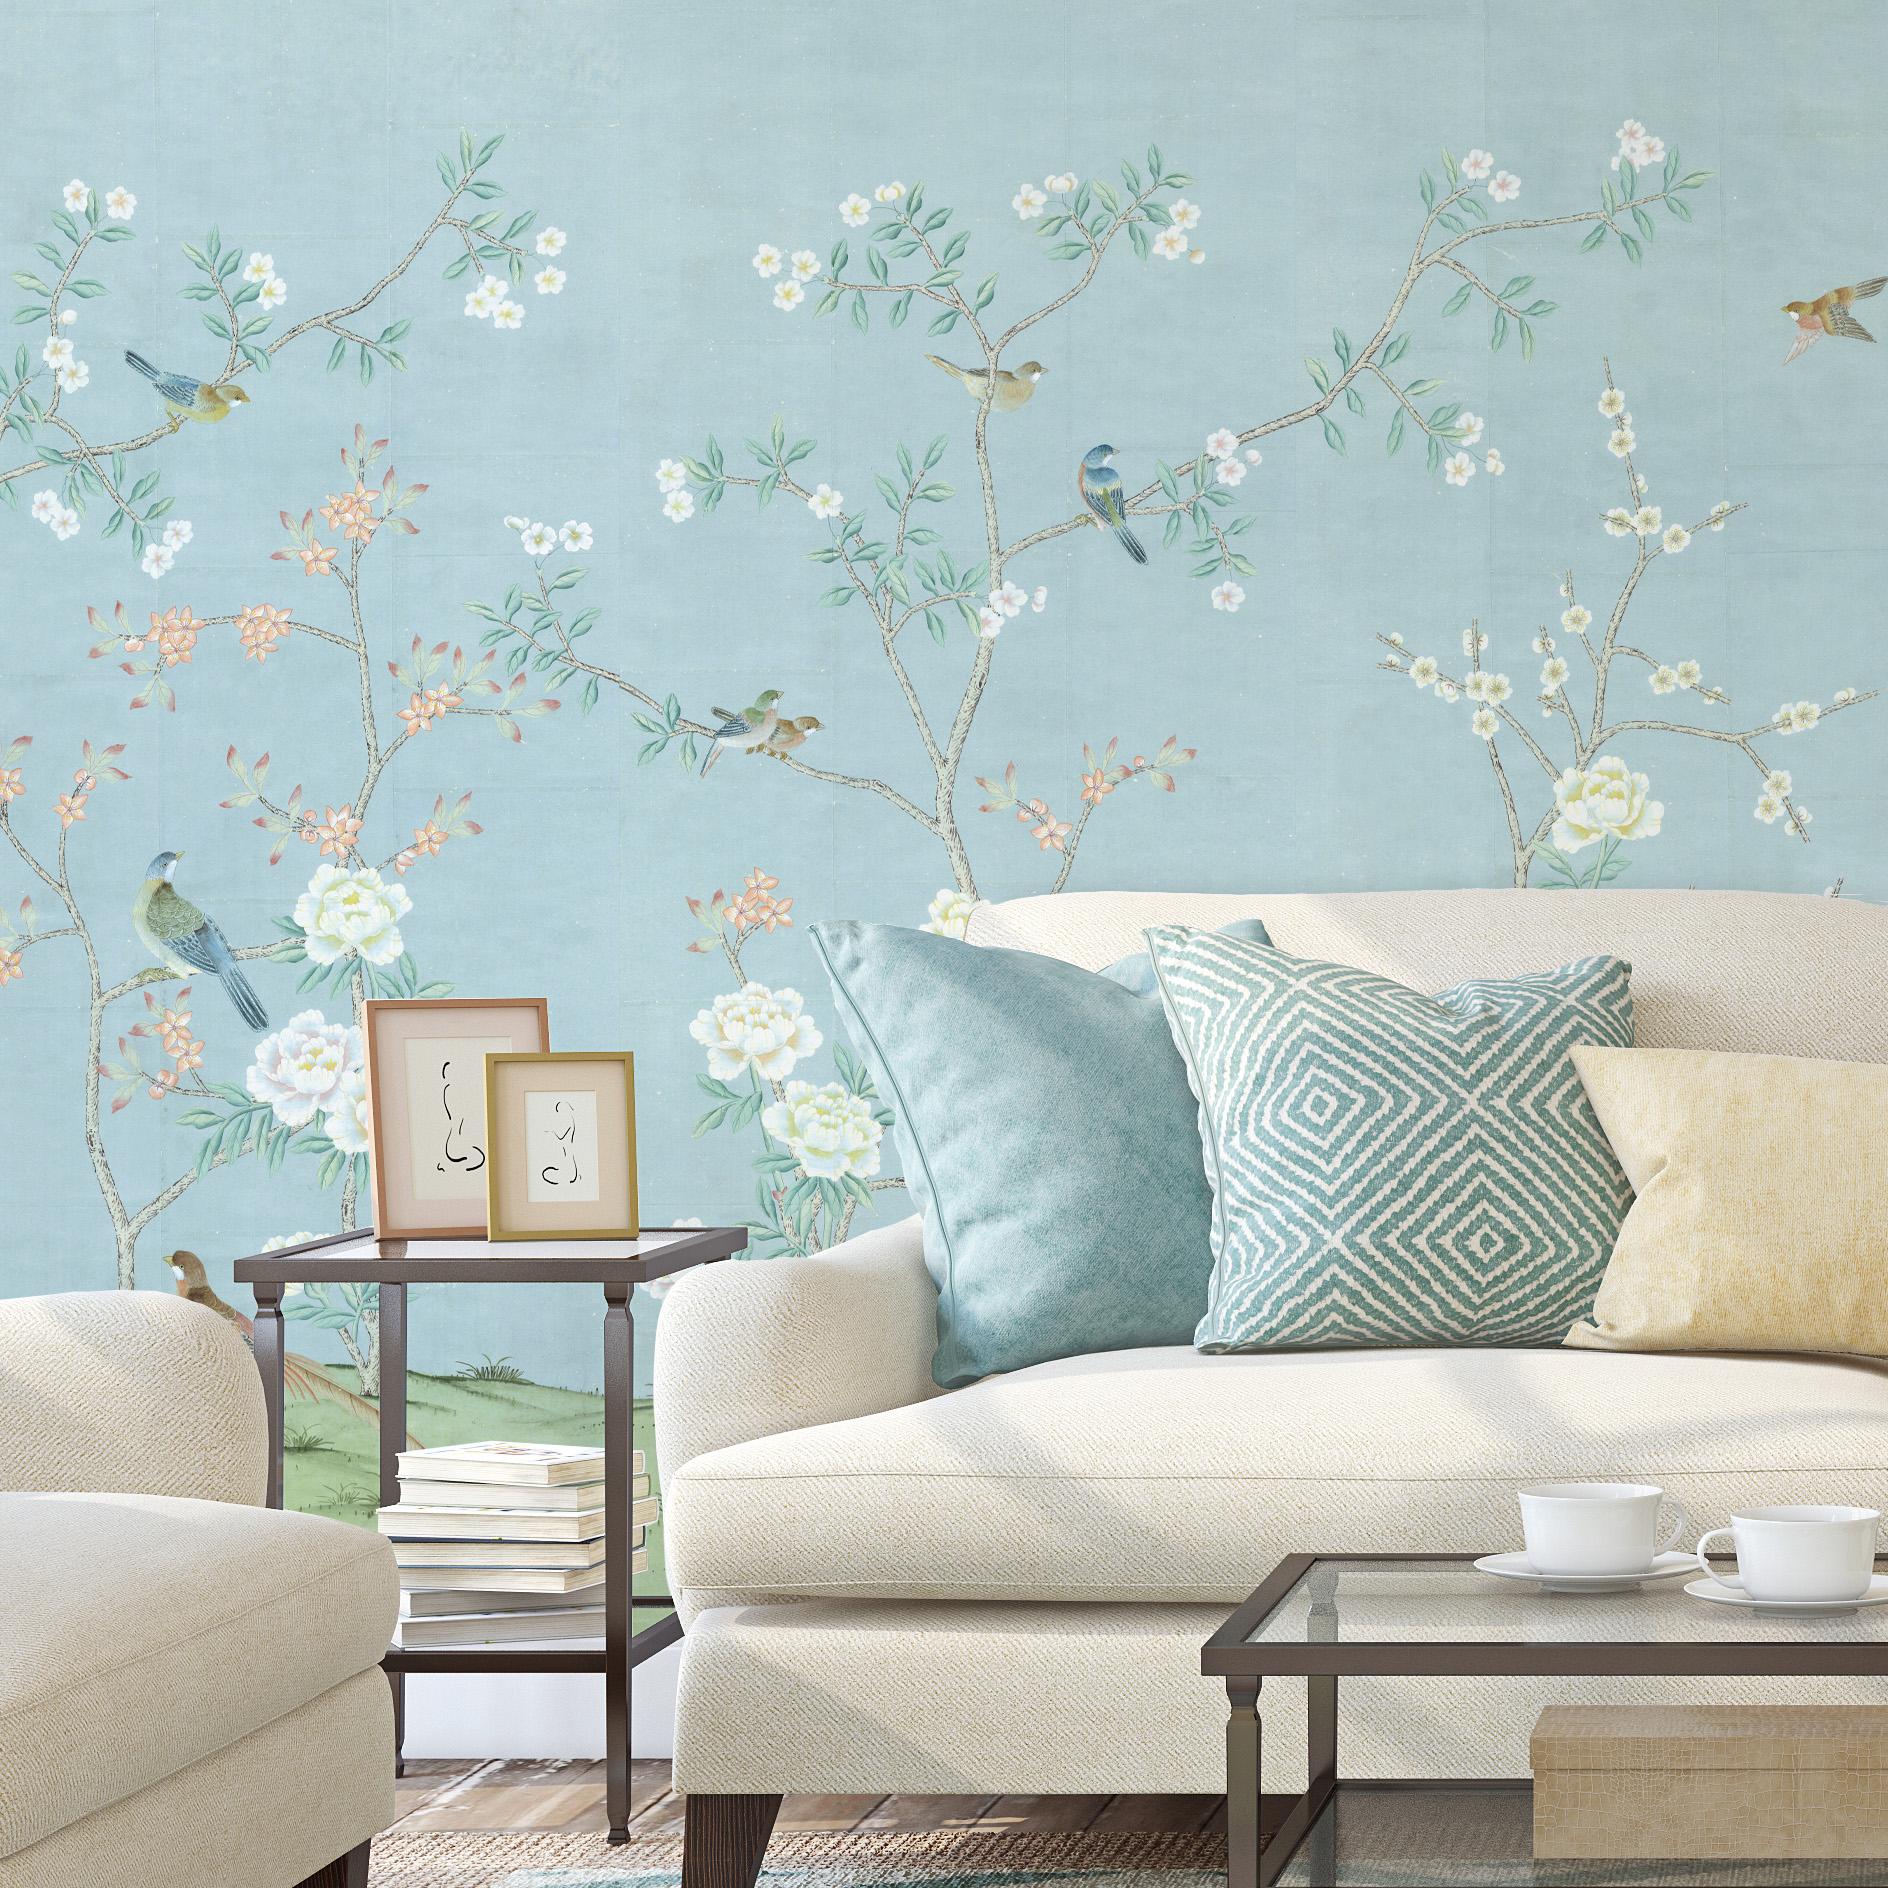 Maysong Spring est un magnifique papier peint mural chinoiserie avec de grandes fleurs blanches sur un fond bleu froid. Ce motif peut ajouter de l'intérêt visuel ou de la couleur à une chambre, un salon ou toute autre pièce de votre appartement ou